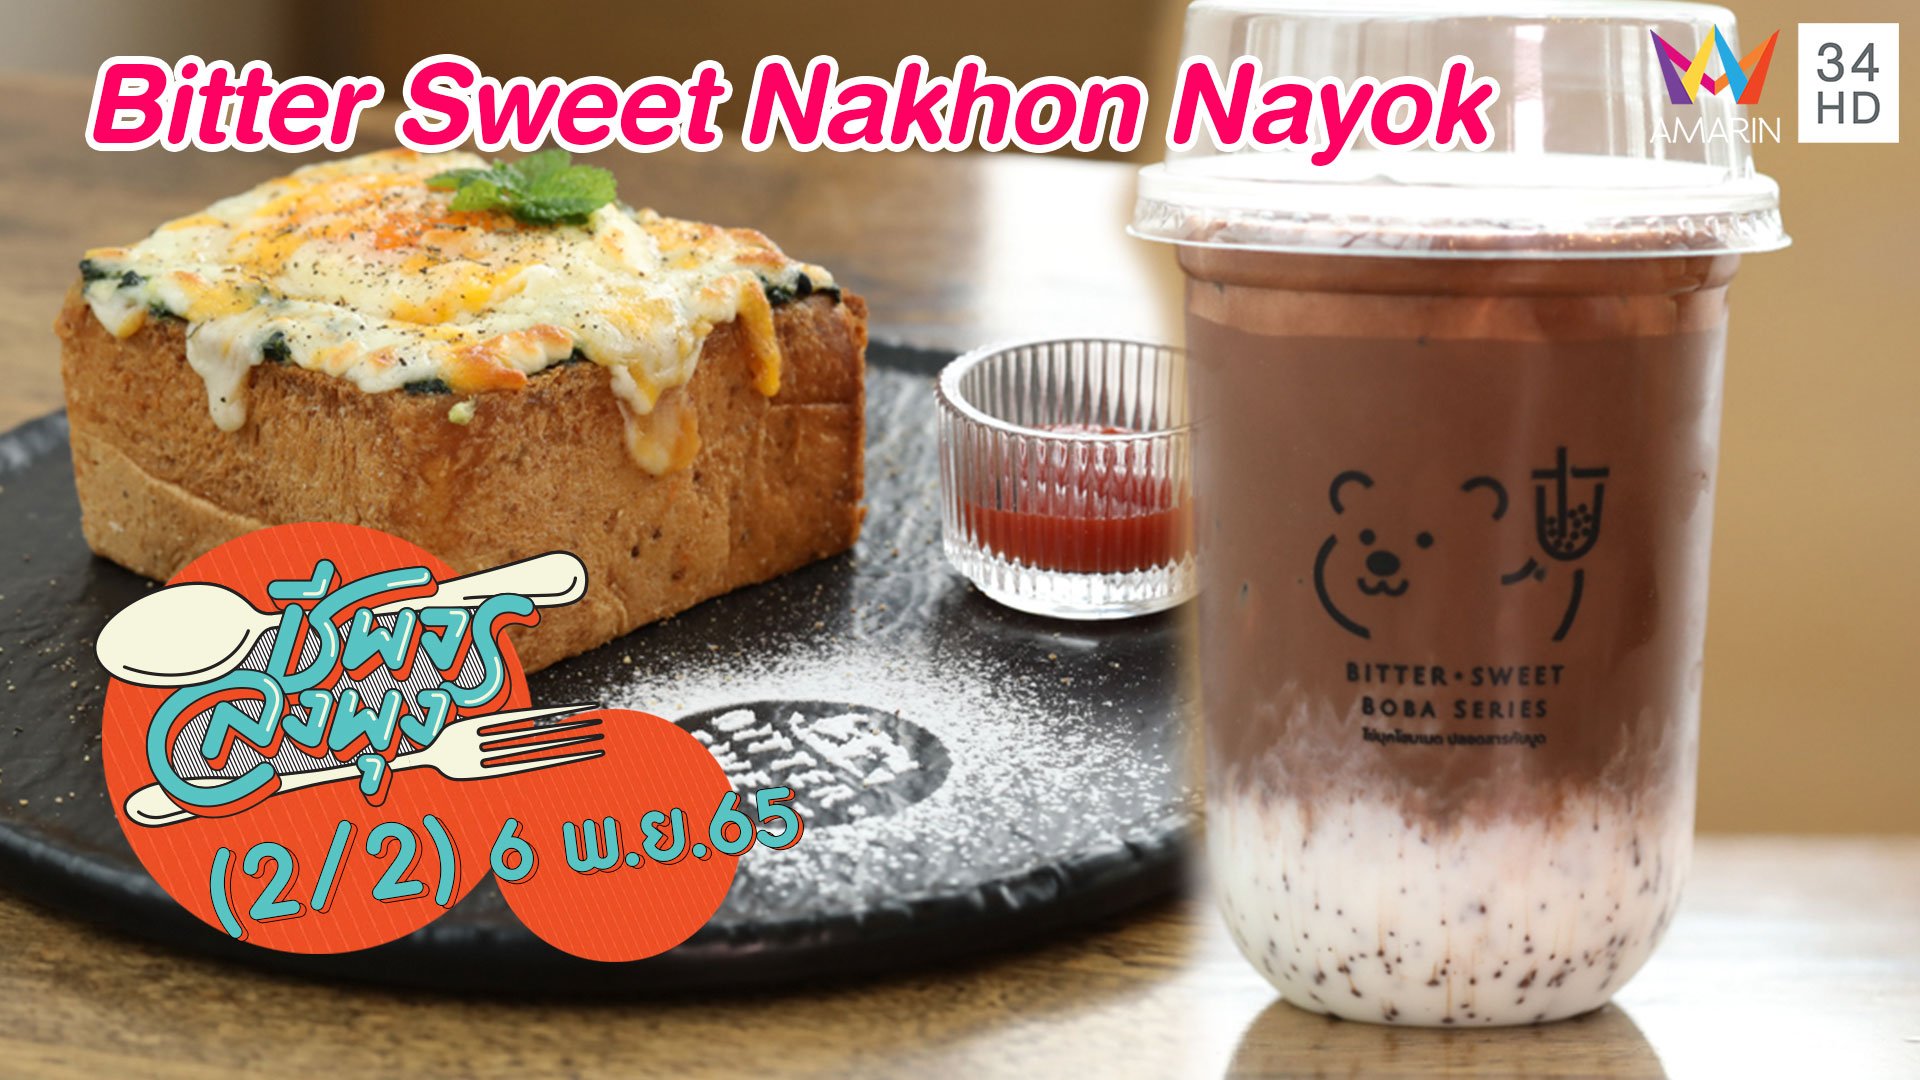 ฟินทั้งของคาว และของหวานโฮมเมด @ร้าน Bitter Sweet Nakhon Nayok | ชีพจรลงพุง | 6 พ.ย. 65 (2/2) | AMARIN TVHD34